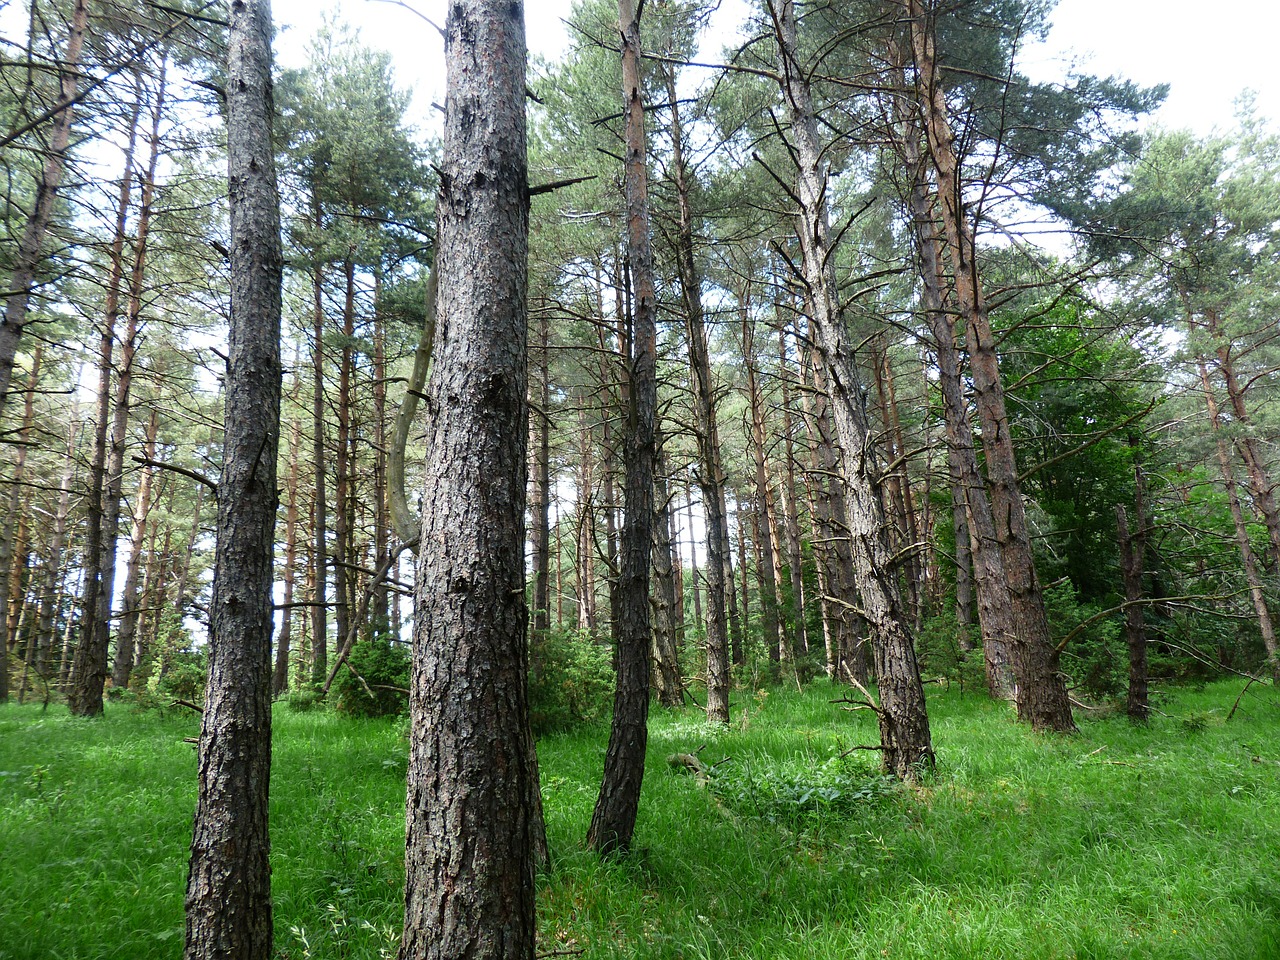 Holzindustrie Schweighofer încurajează protejarea pădurilor virgine și cvasi-virgine